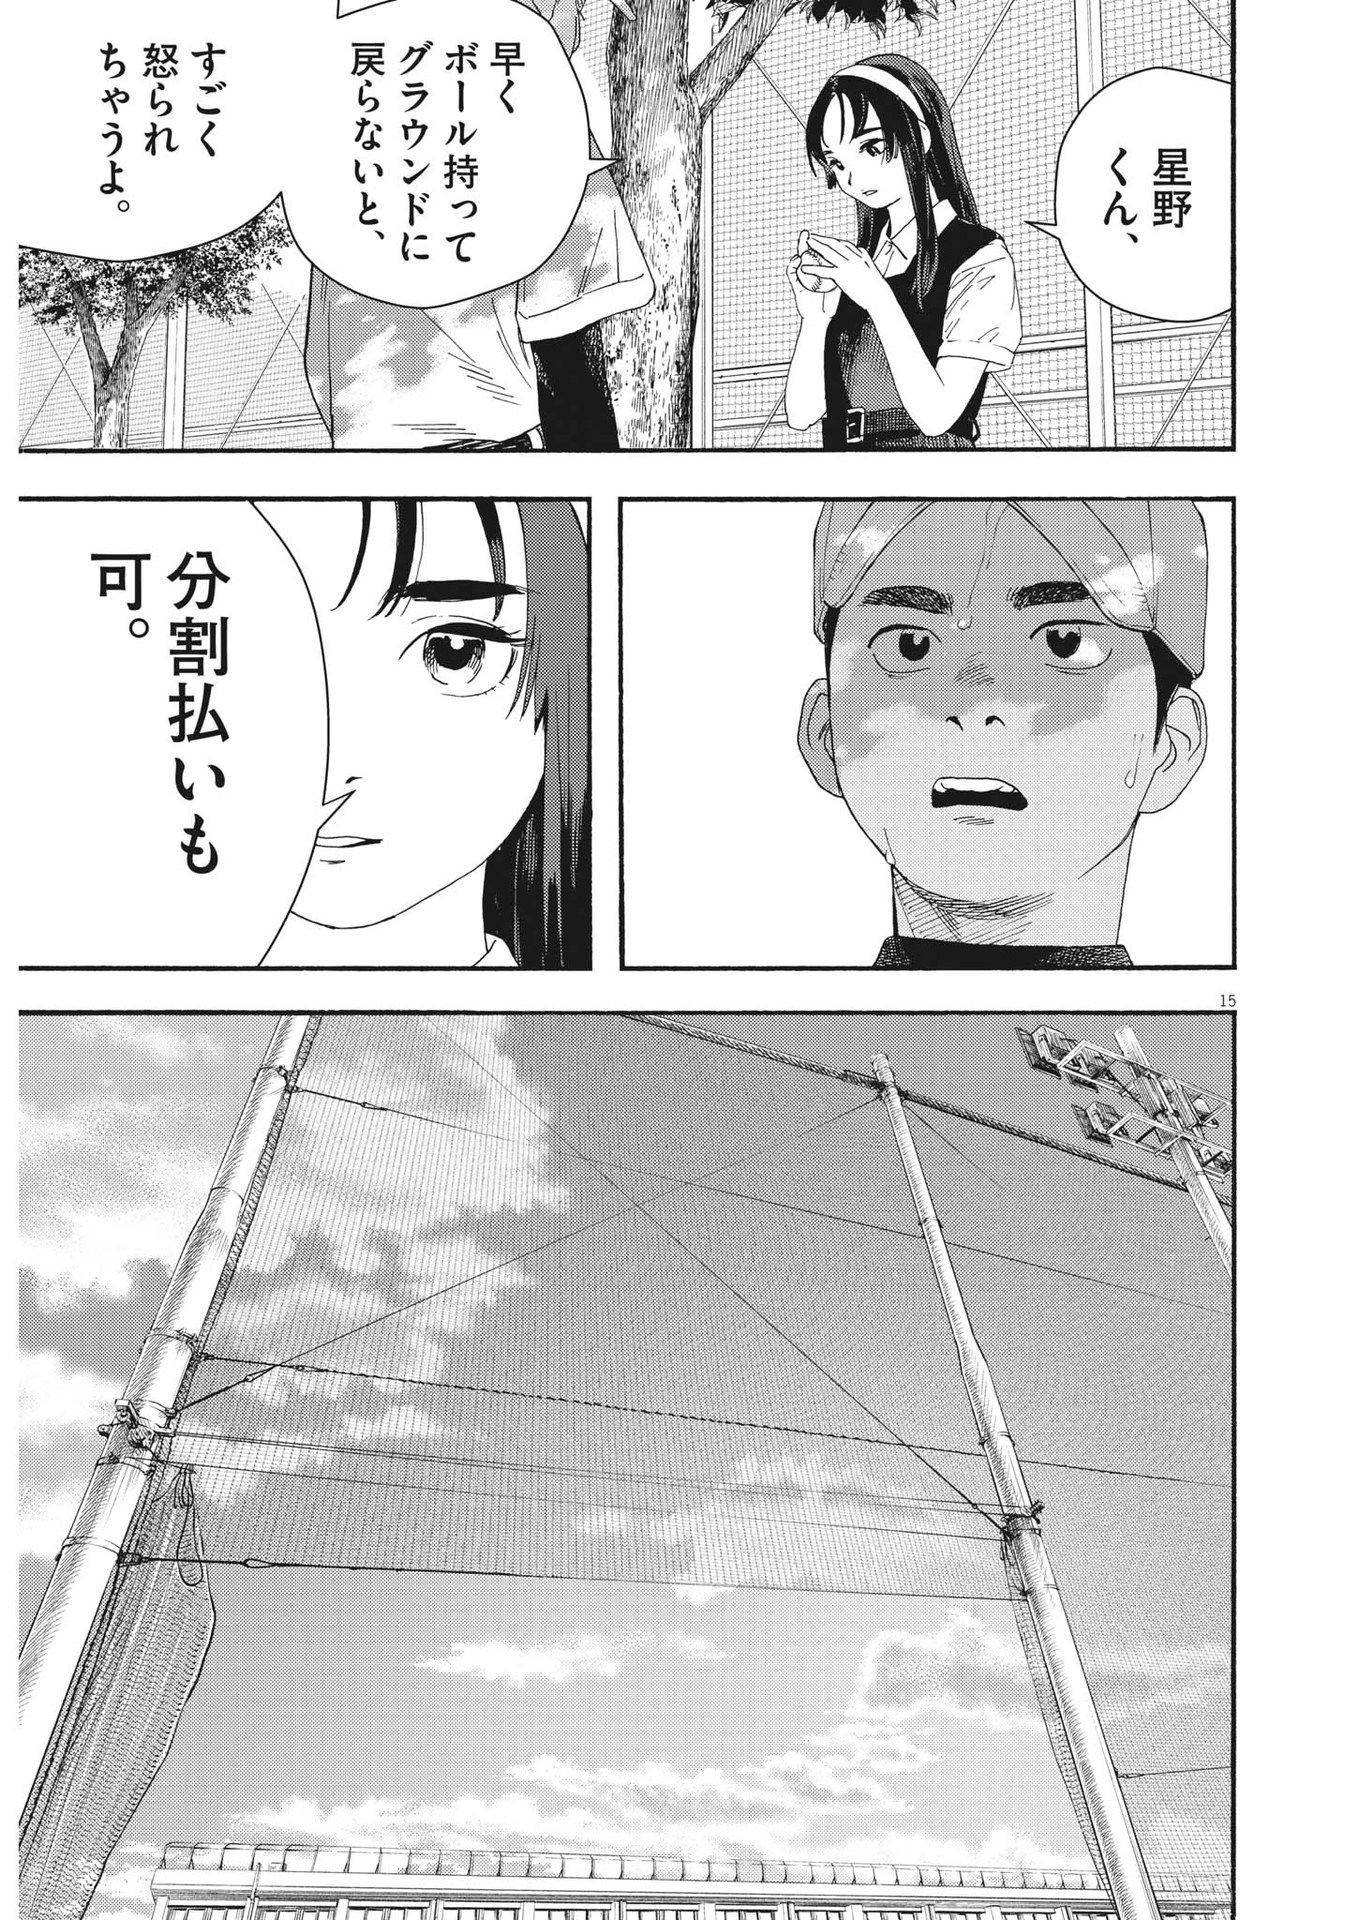 Hoshino-kun, Shitagatte! - Chapter 1 - Page 15